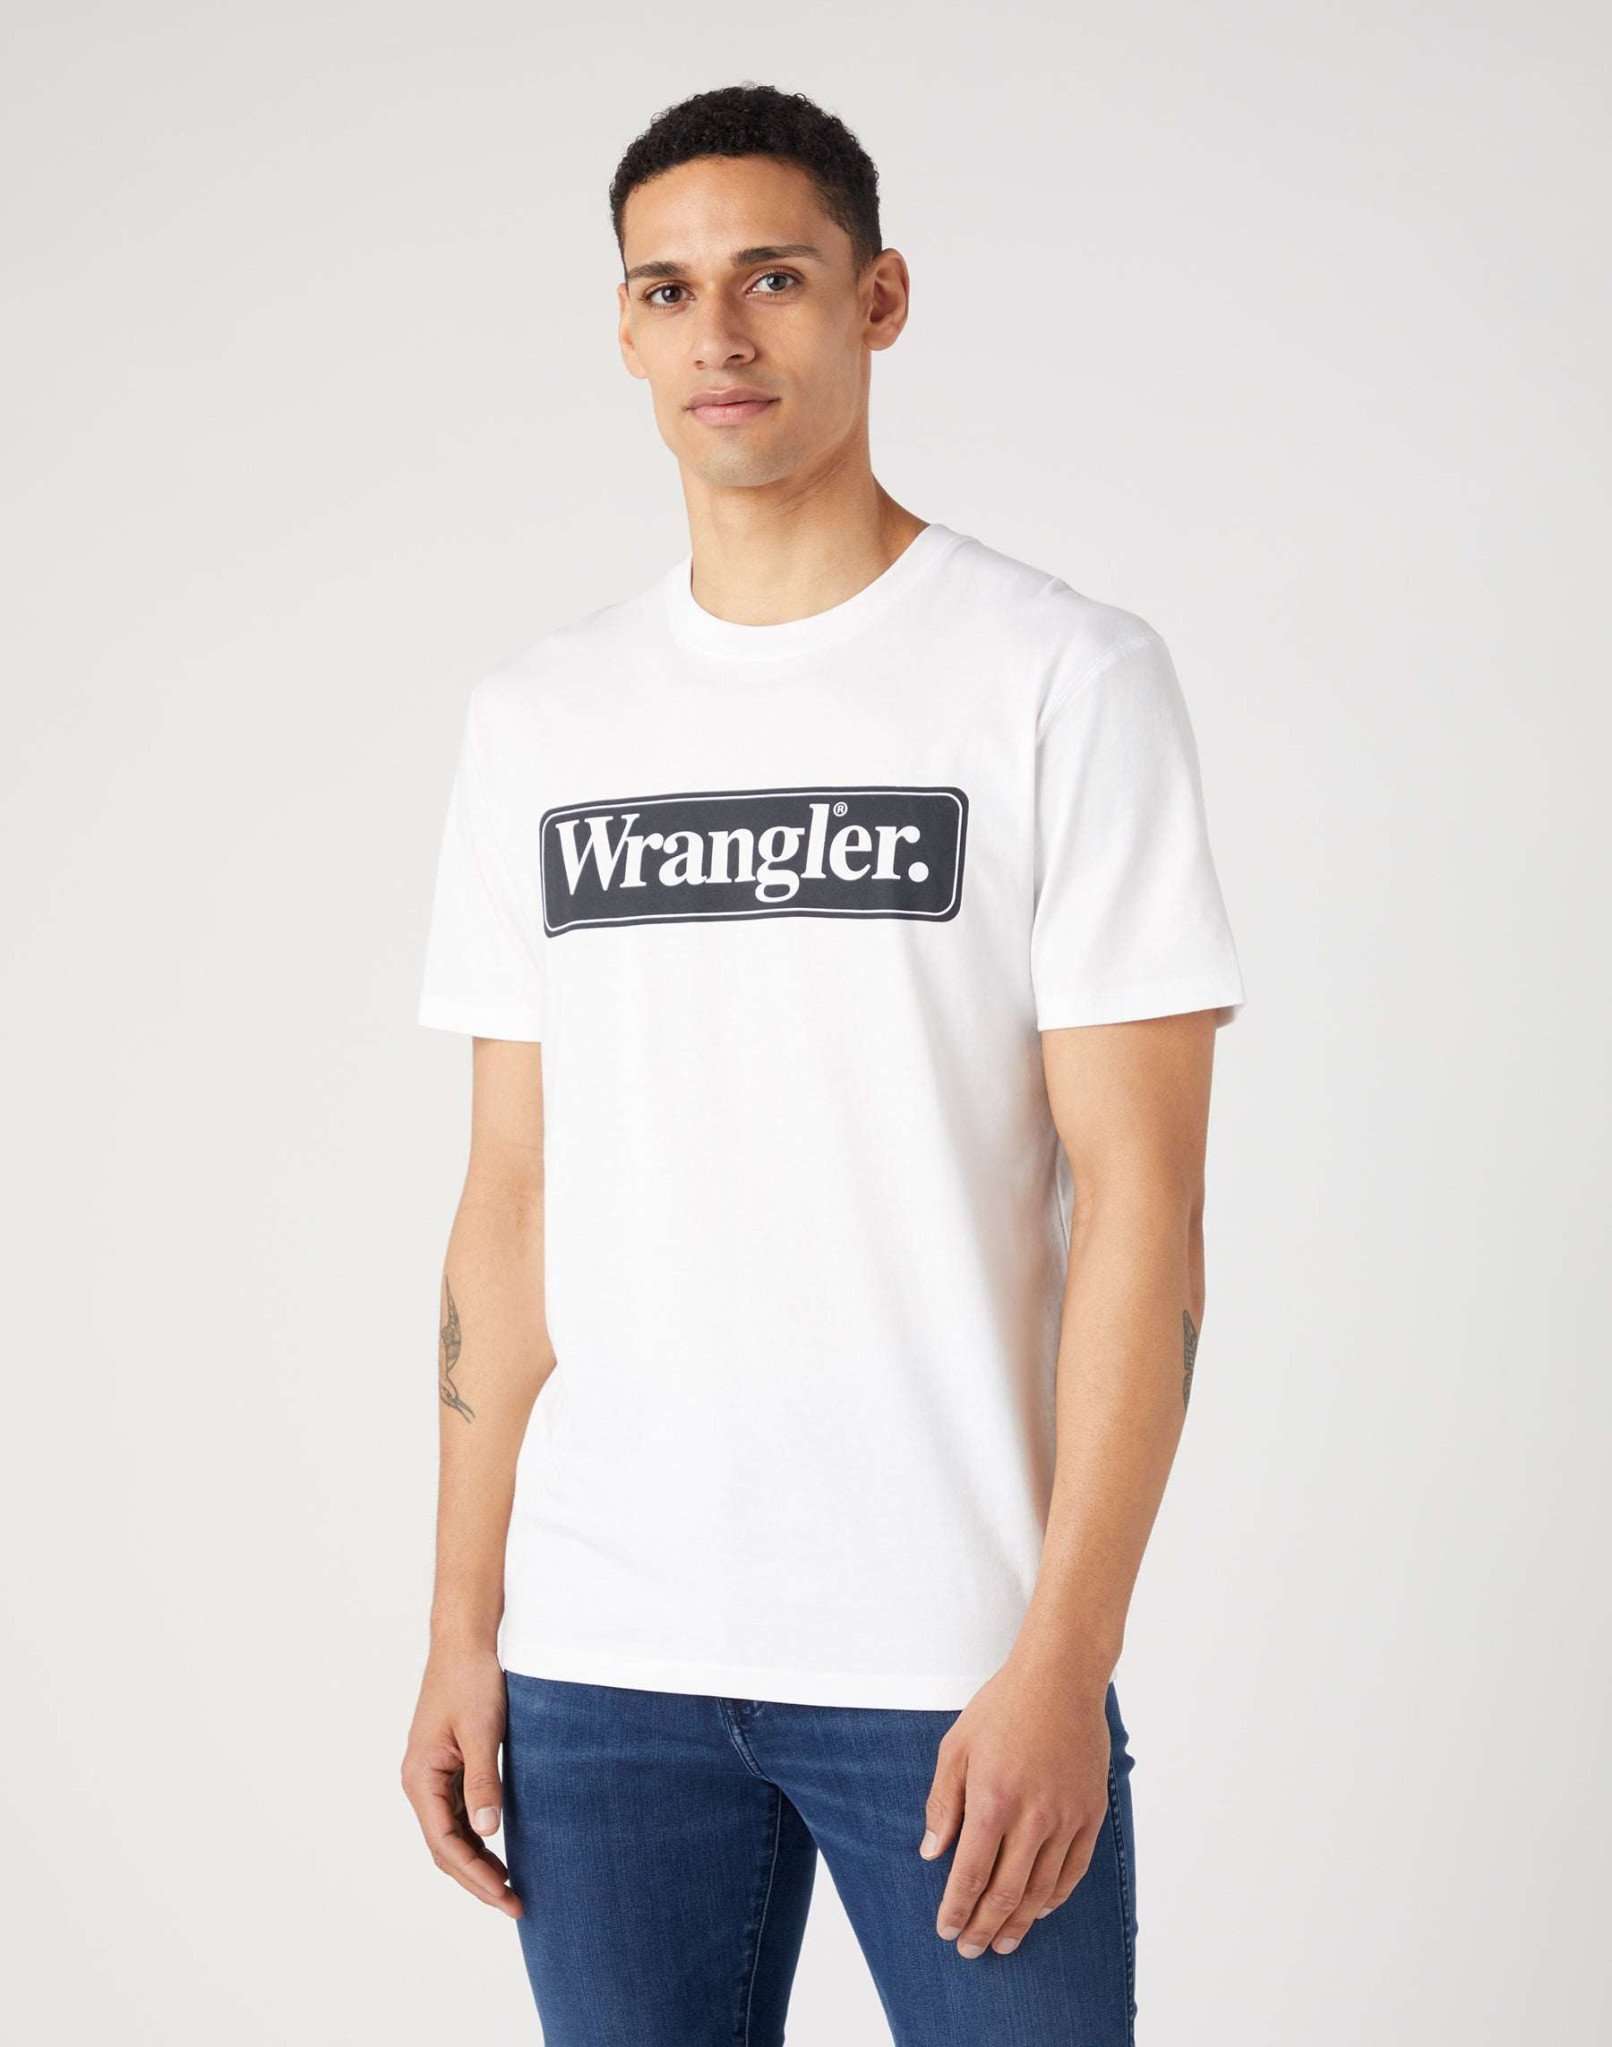 Wrangler Tee in White T-Shirts Wrangler   